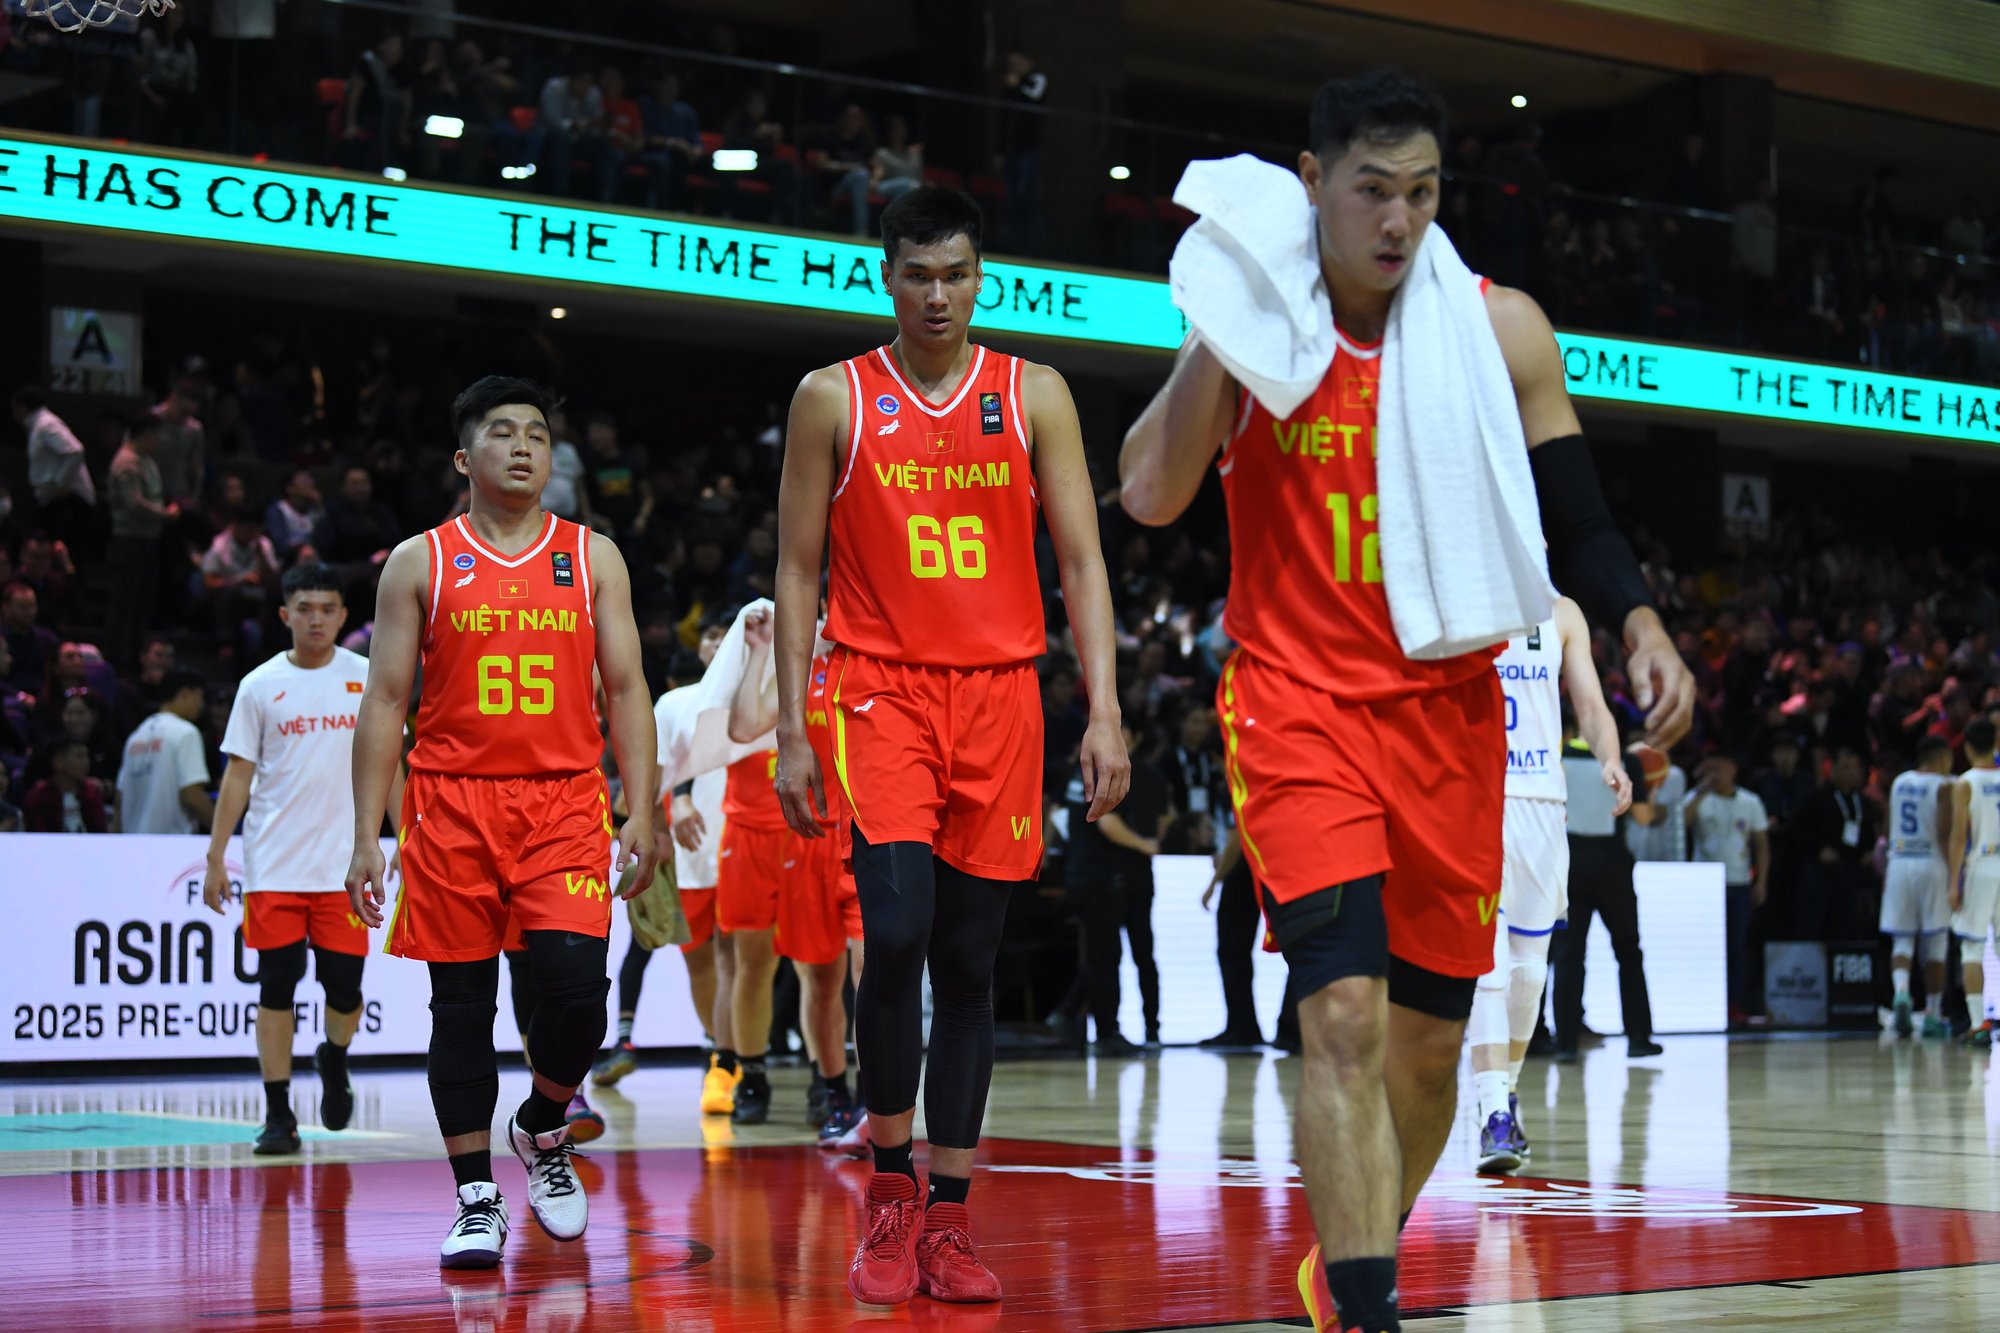 Đội tuyển bóng rổ Việt Nam thua ngược Mông Cổ ở vòng sơ loại FIBA Asia Cup 2025 - Ảnh 1.